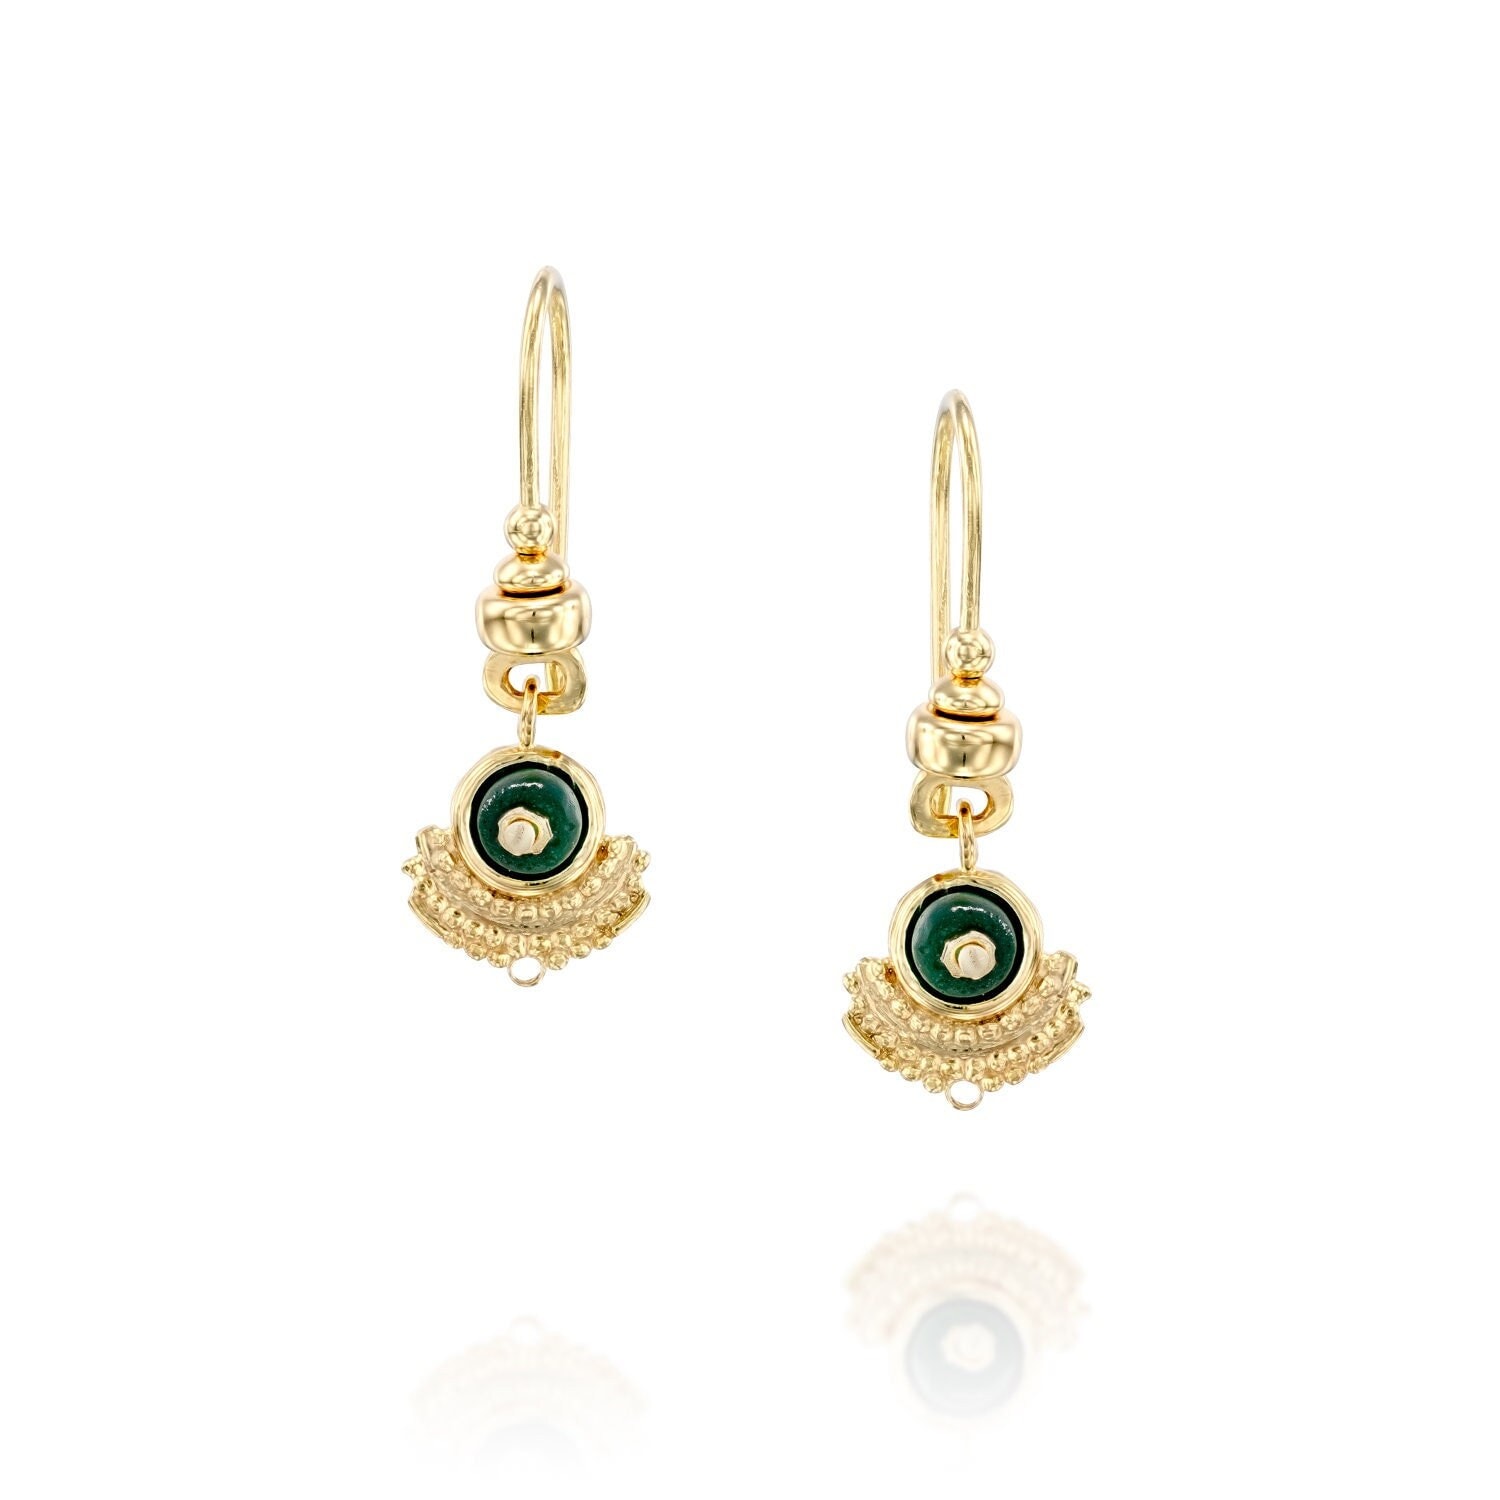 699 Daily Wear Earrings Jewellery Designs, Buy Price @ 3267 - CaratLane.com